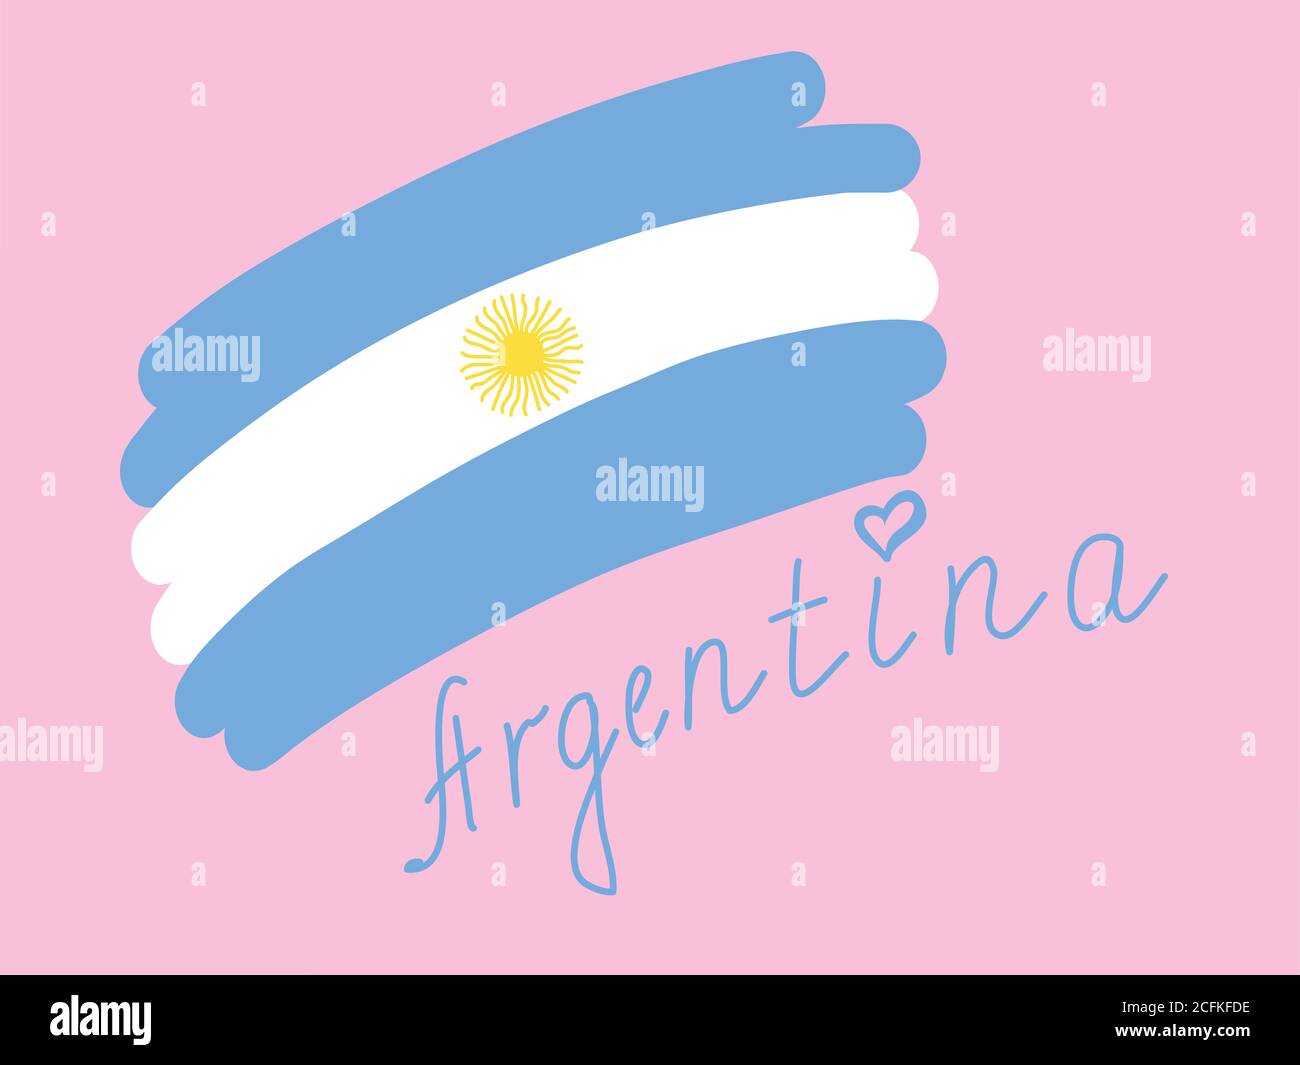 Argentinien Flagge, einfache stilisierte Vektor-Illustration mit Freihandtext. Blaue und weiße Flagge Argentiniens, handgezeichneter Landname mit Herz über lett Stock Vektor